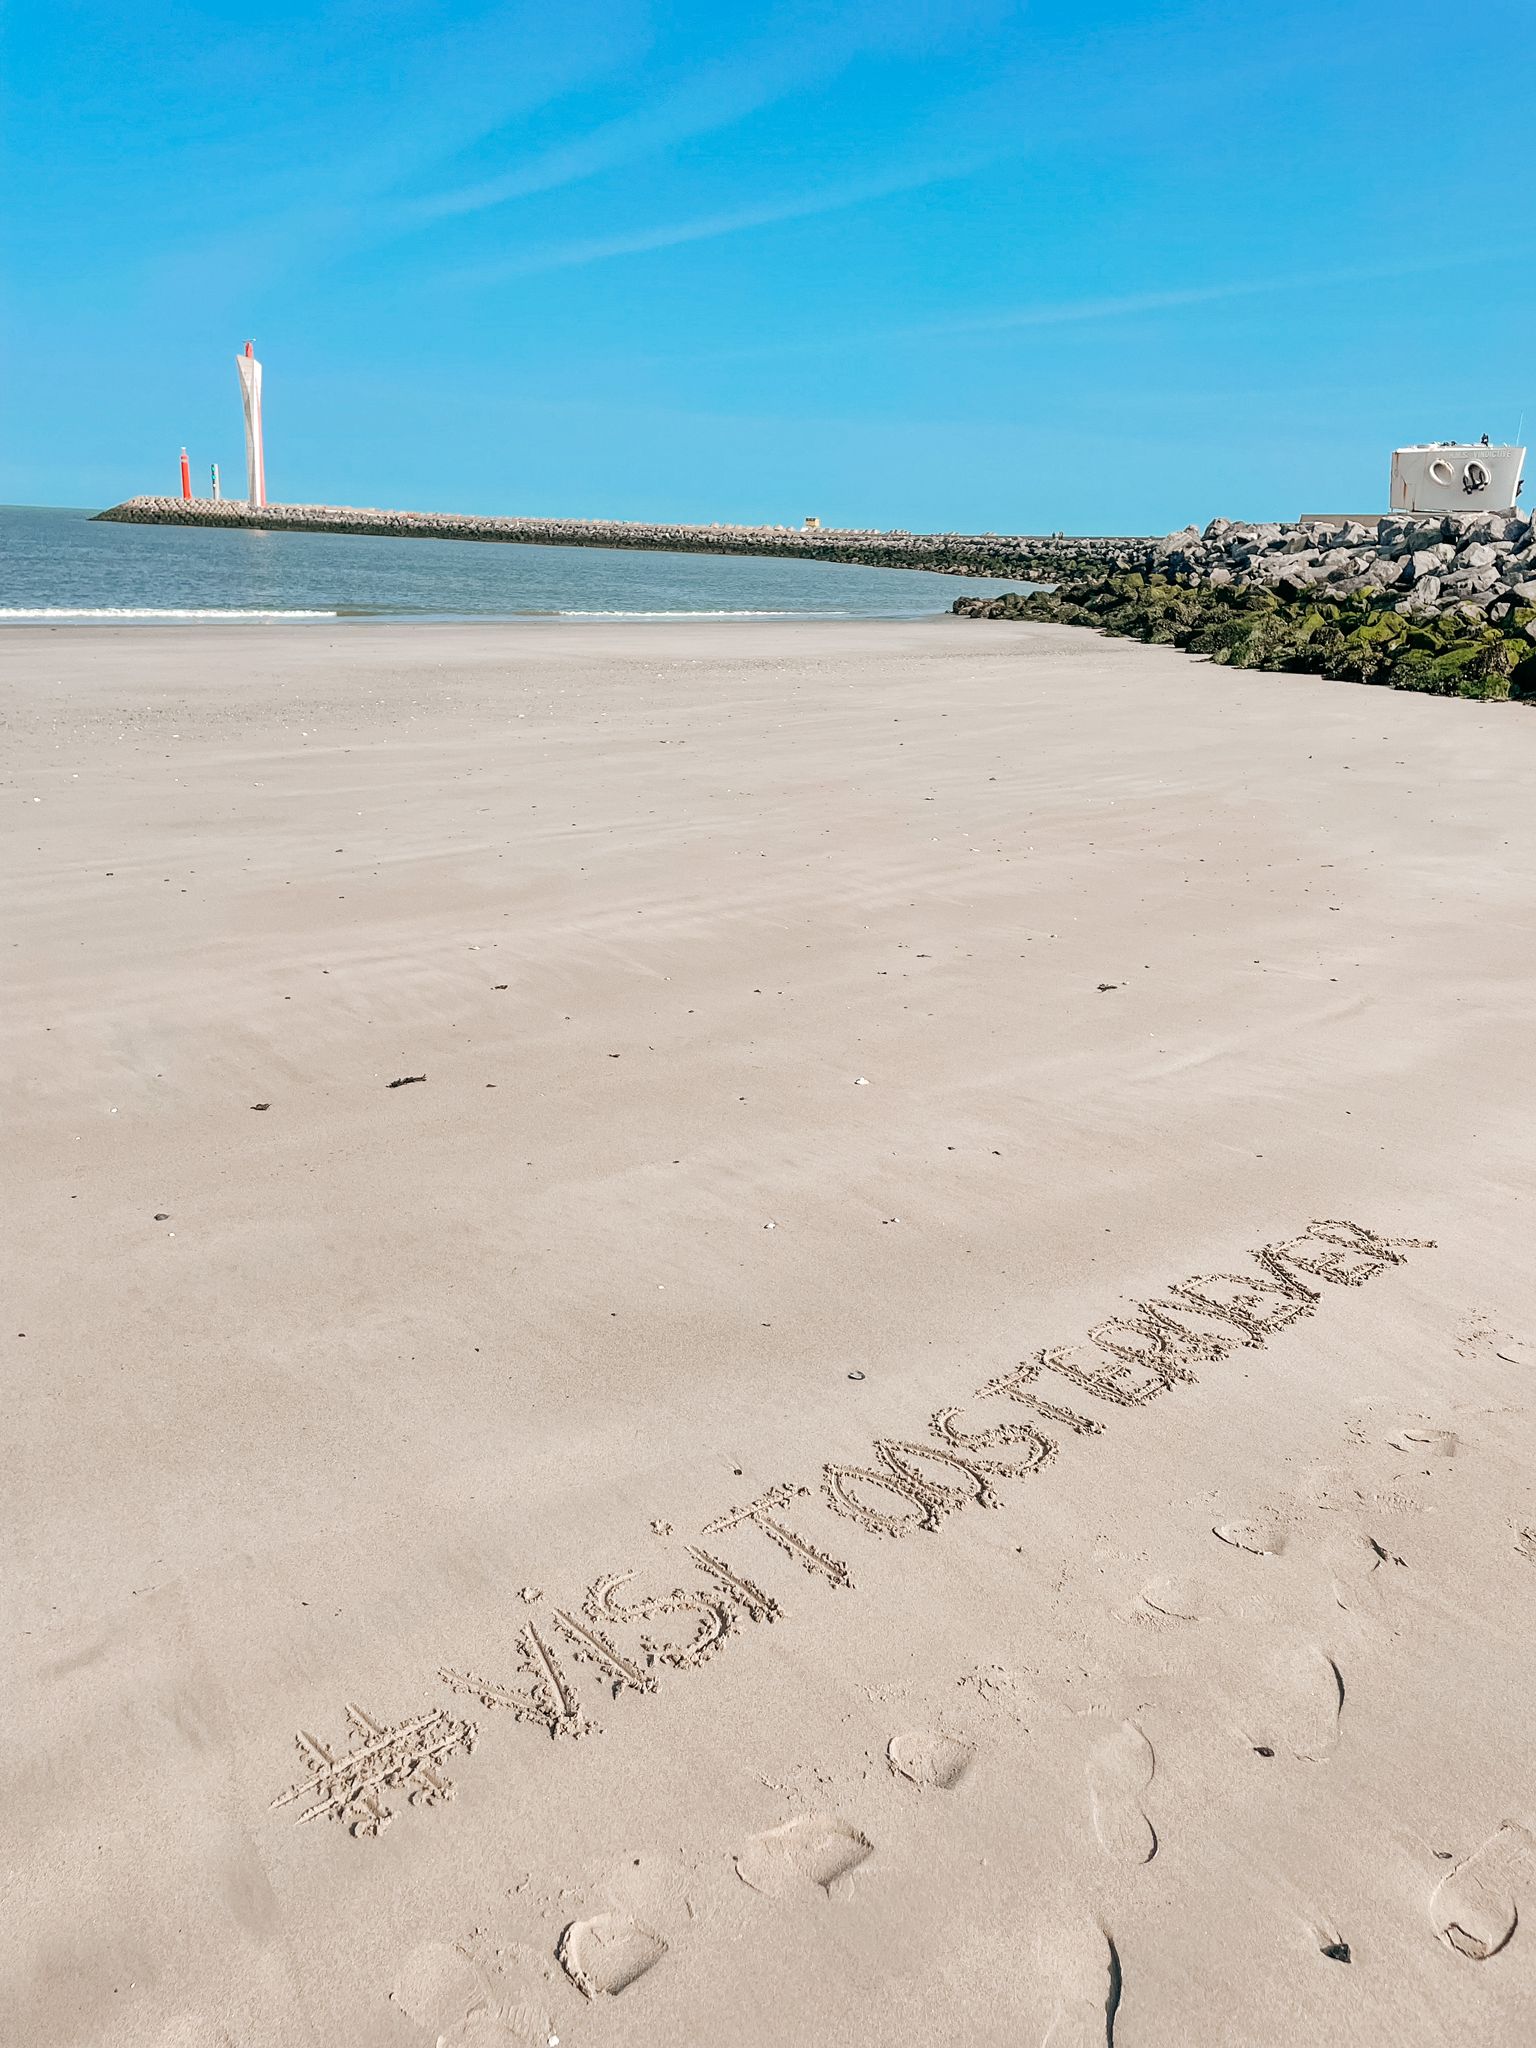 #Oosteroever geschreven in het zand